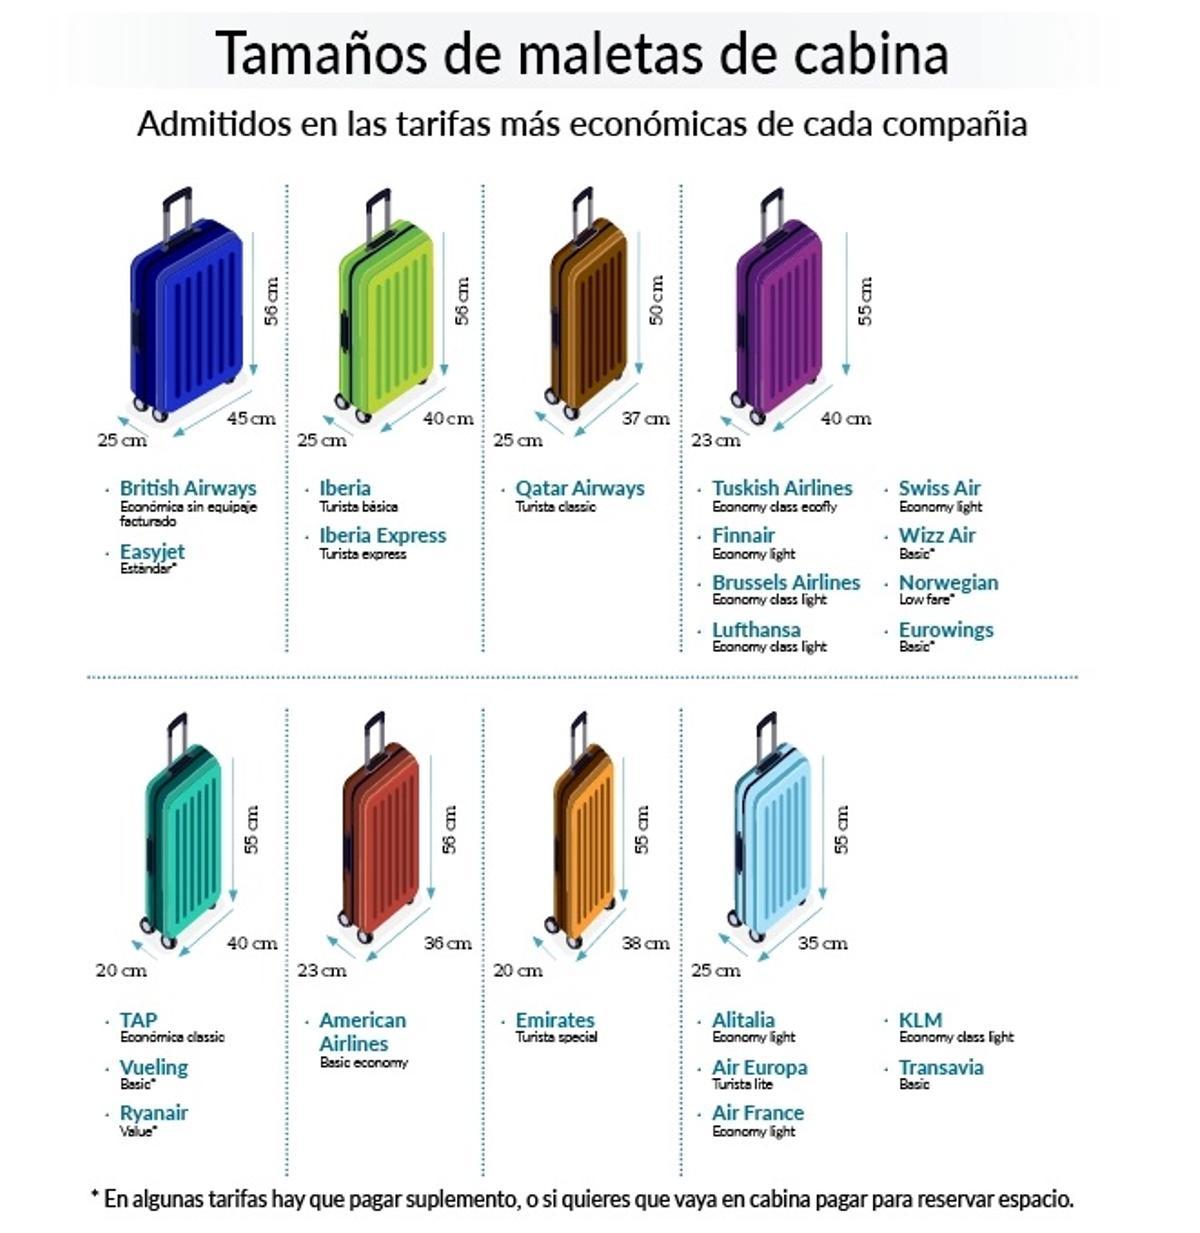 Tamaños de maletas de cabina según las diferentes compañías.